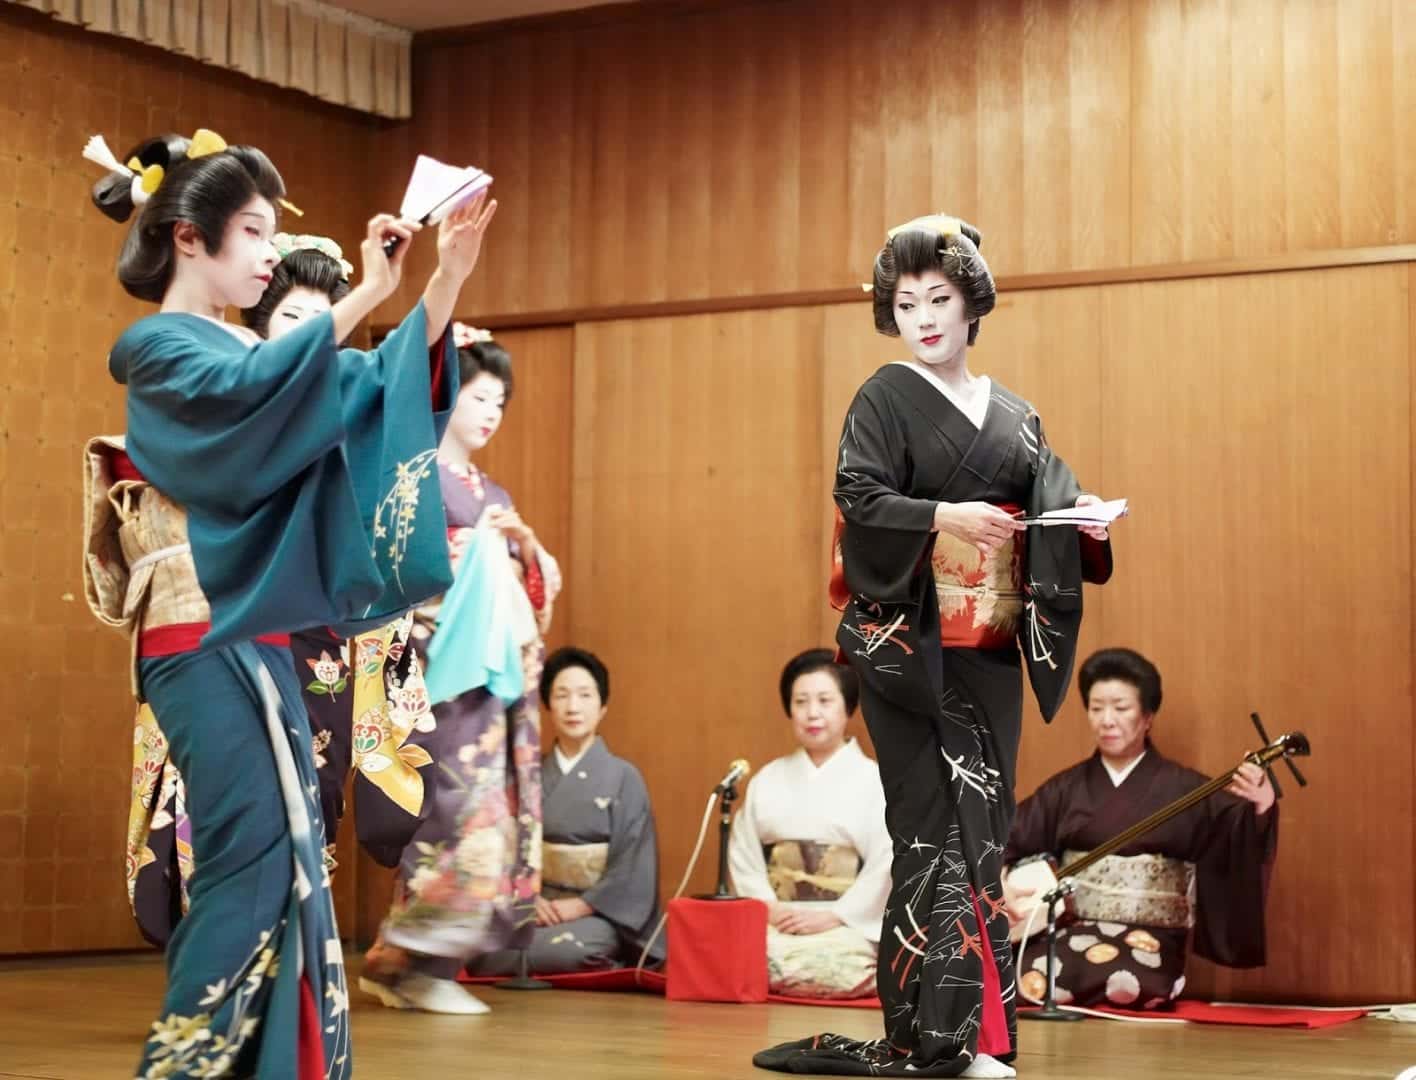 Gueixas - Mitos e verdades desse grande símbolo da cultura japonesa